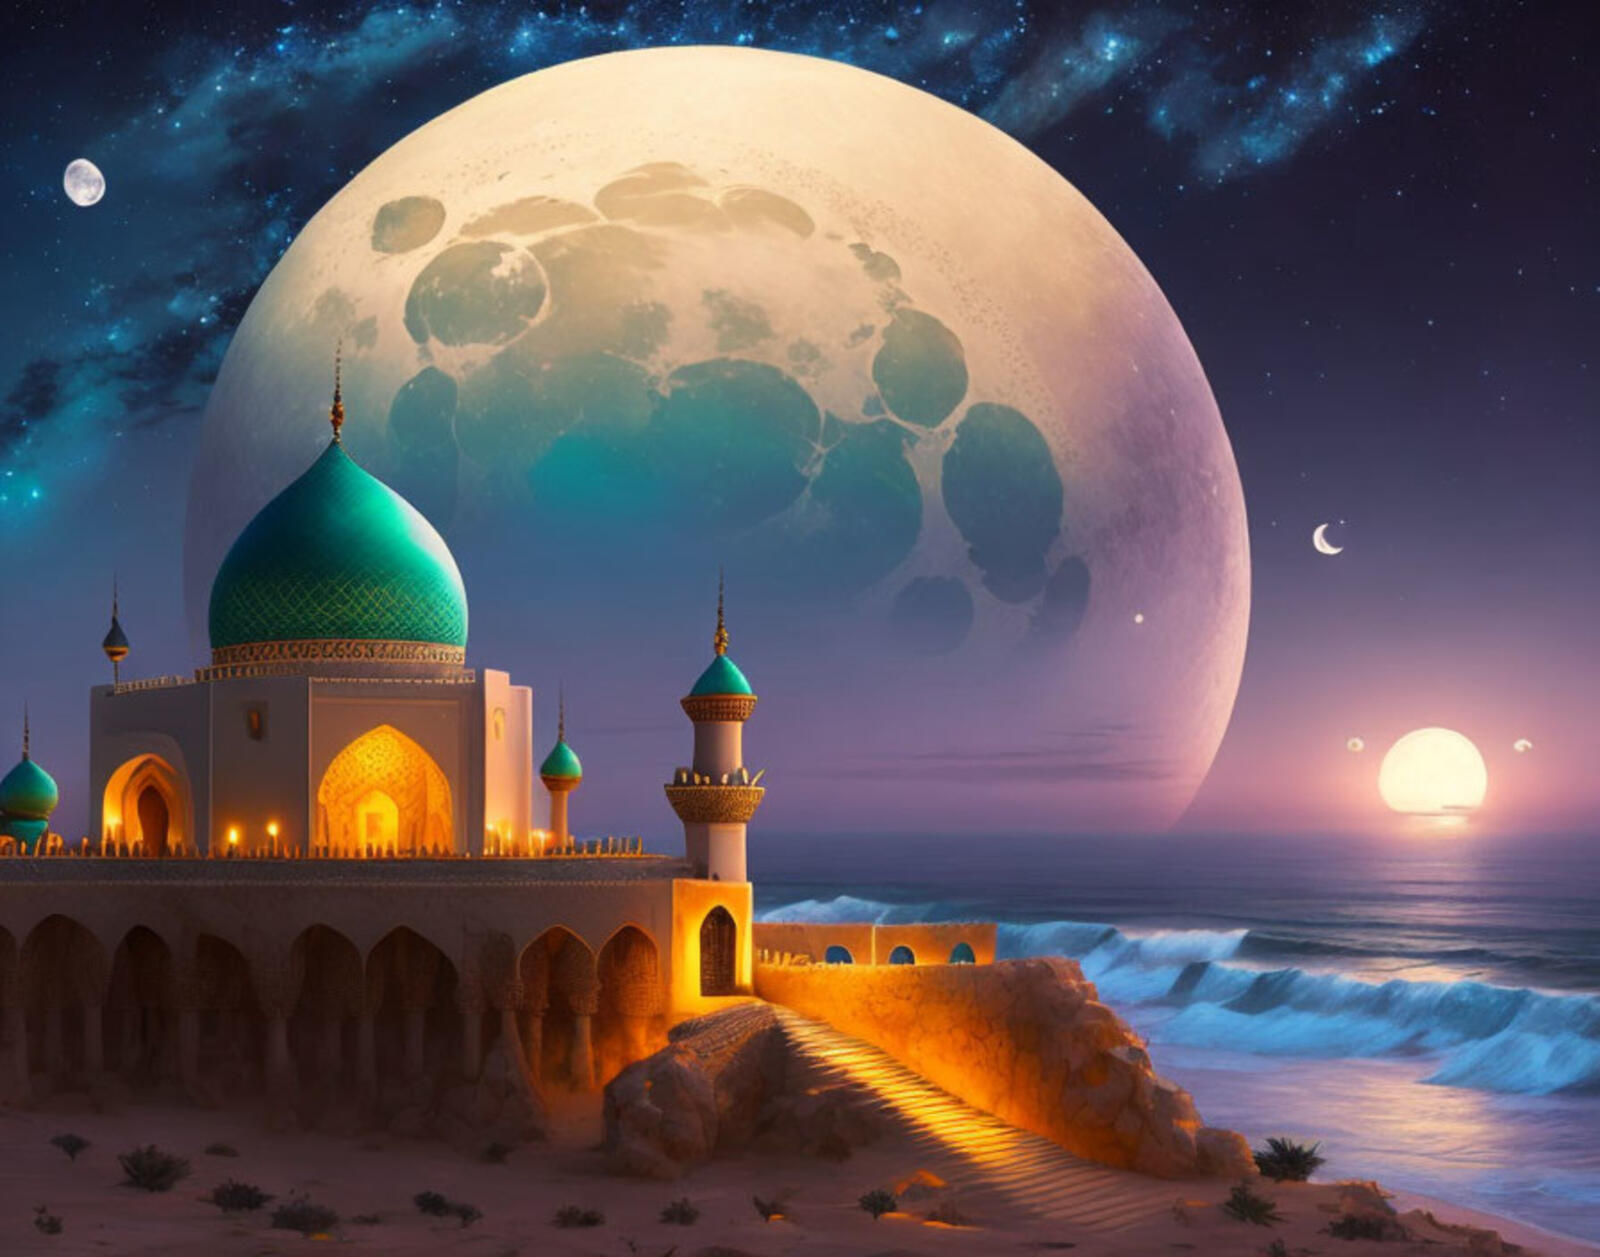 Бесплатное фото Арабский замок на фоне огромной Луны